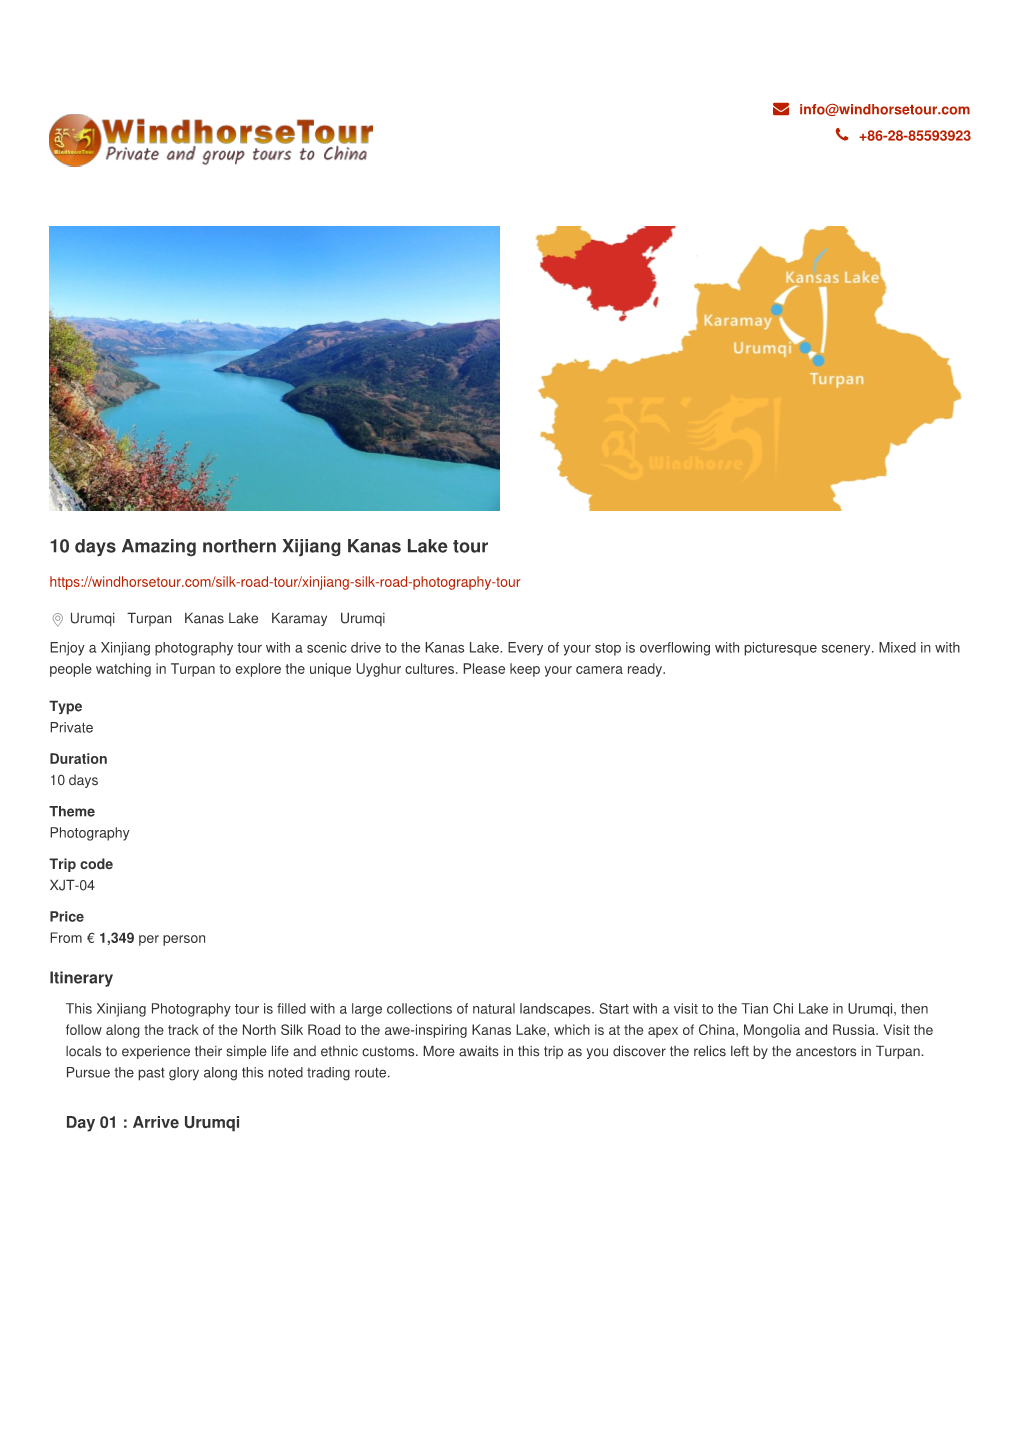 10 Days Amazing Northern Xijiang Kanas Lake Tour